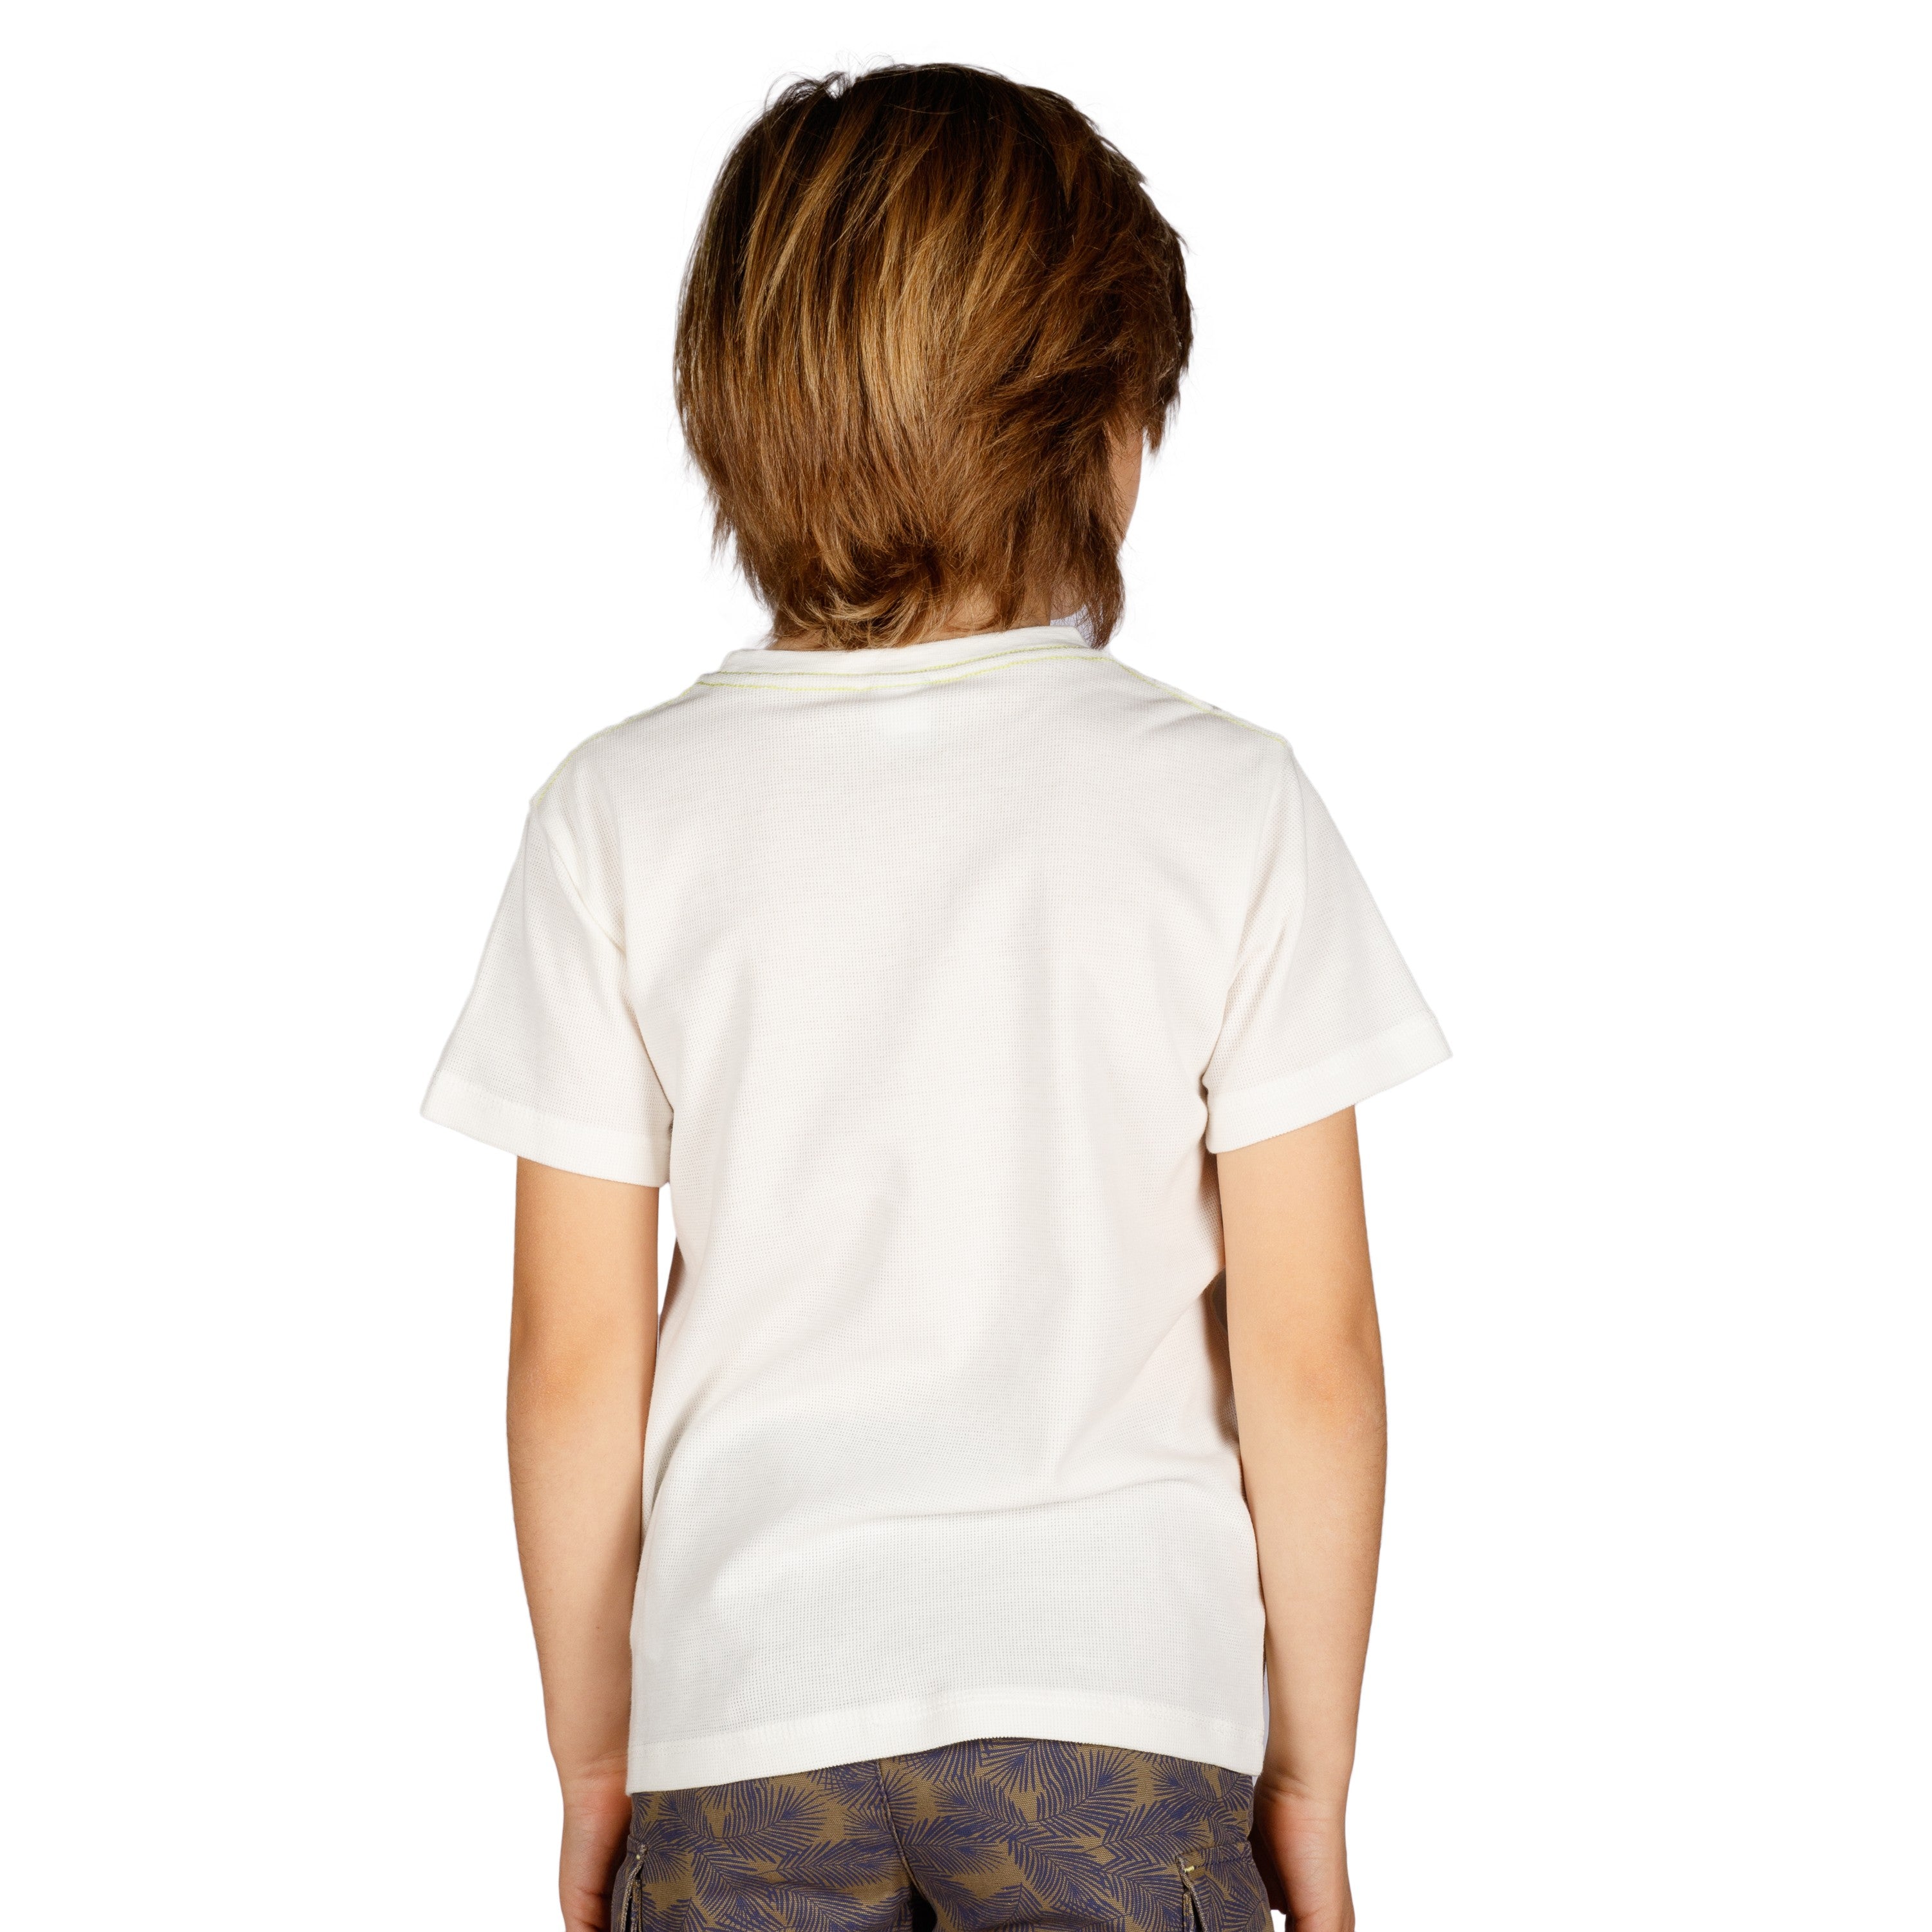 Camiseta de niño crudo VERANO/Outlet